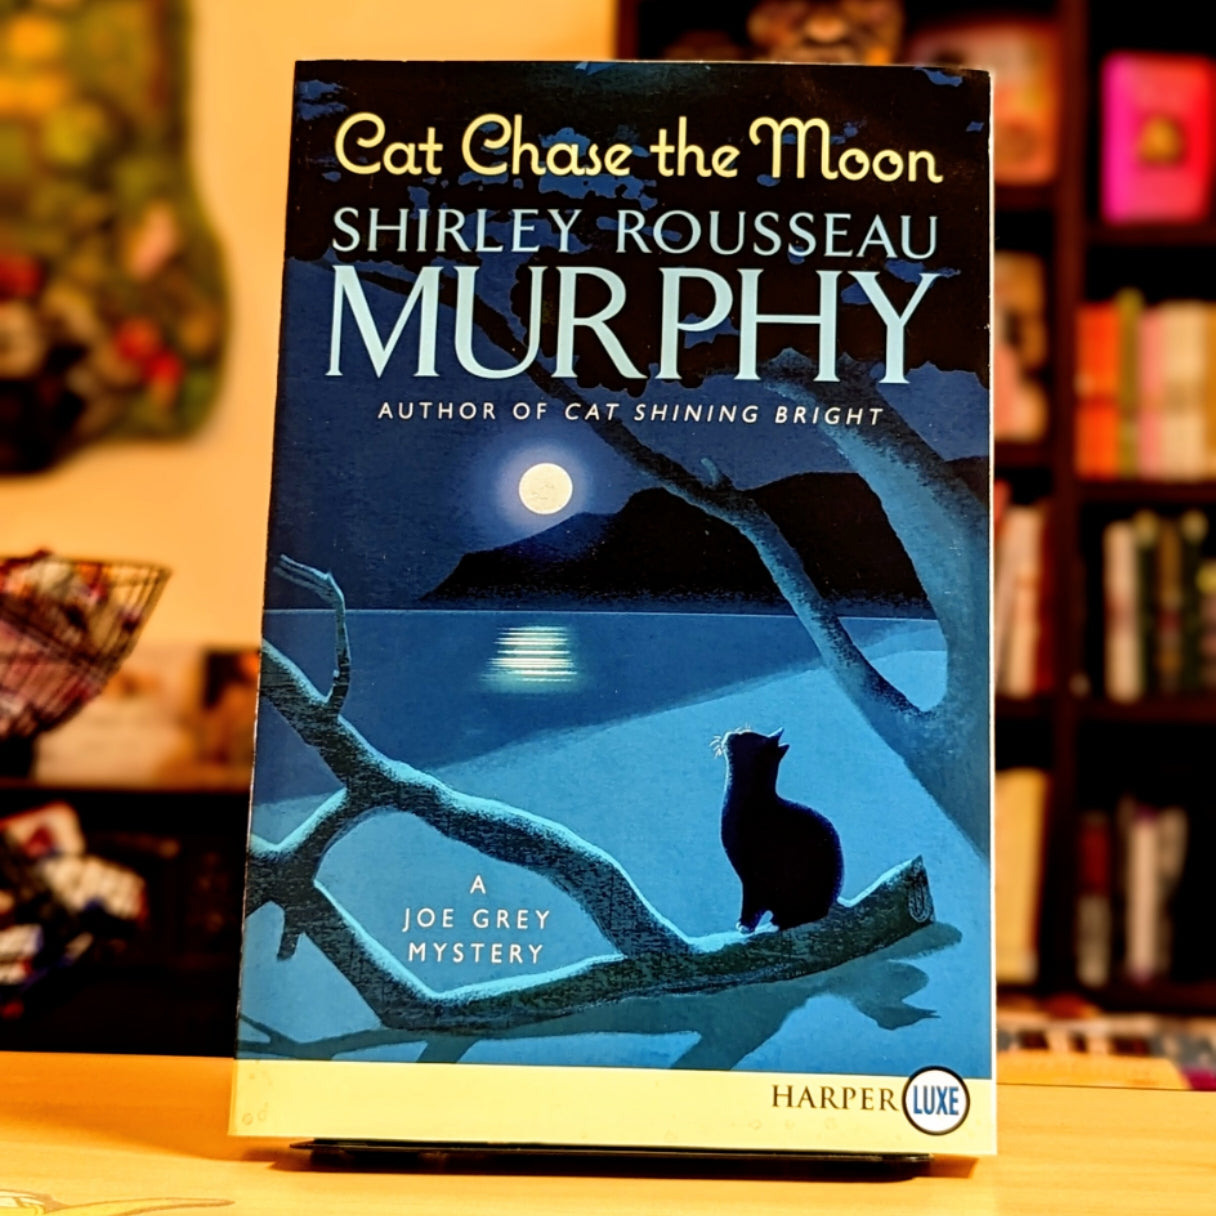 Cat Chase the Moon: A Joe Grey Mystery (Joe Grey Mystery Series)